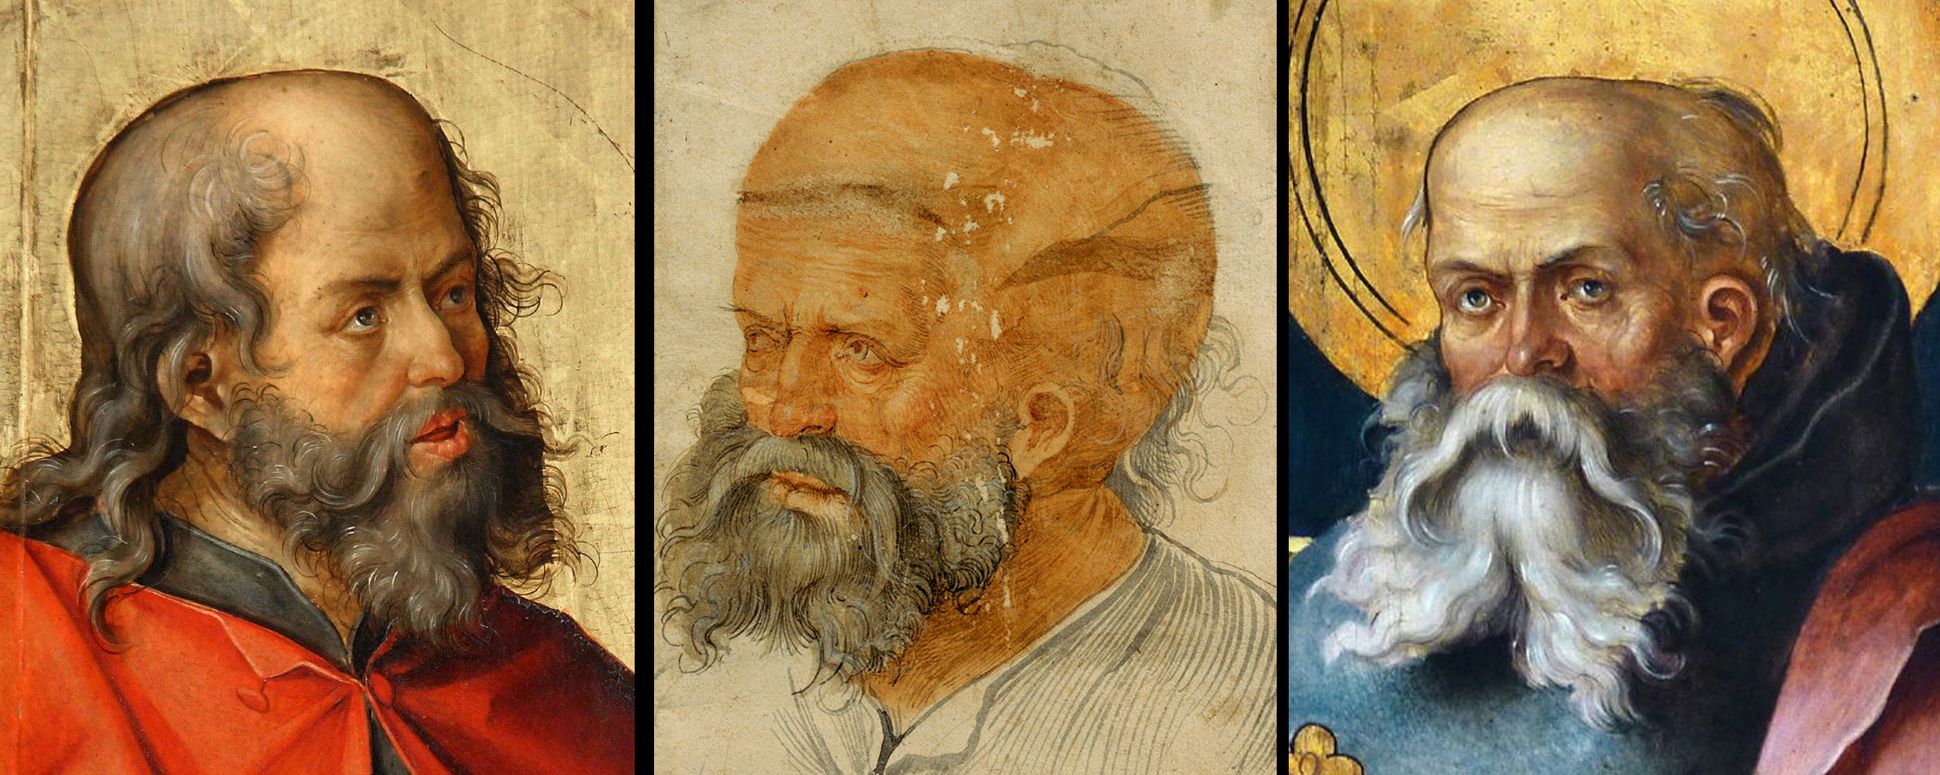 Joseph (Petrus?) Vergleichsbilder: LINKS Joseph aus dem Annenaltar in St. Lorenz (1510) / MITTE Joseph (Petrus?)(1510) / RECHTS Antonius aus dem Wendelsteiner Dreikönigsaltar (1510)